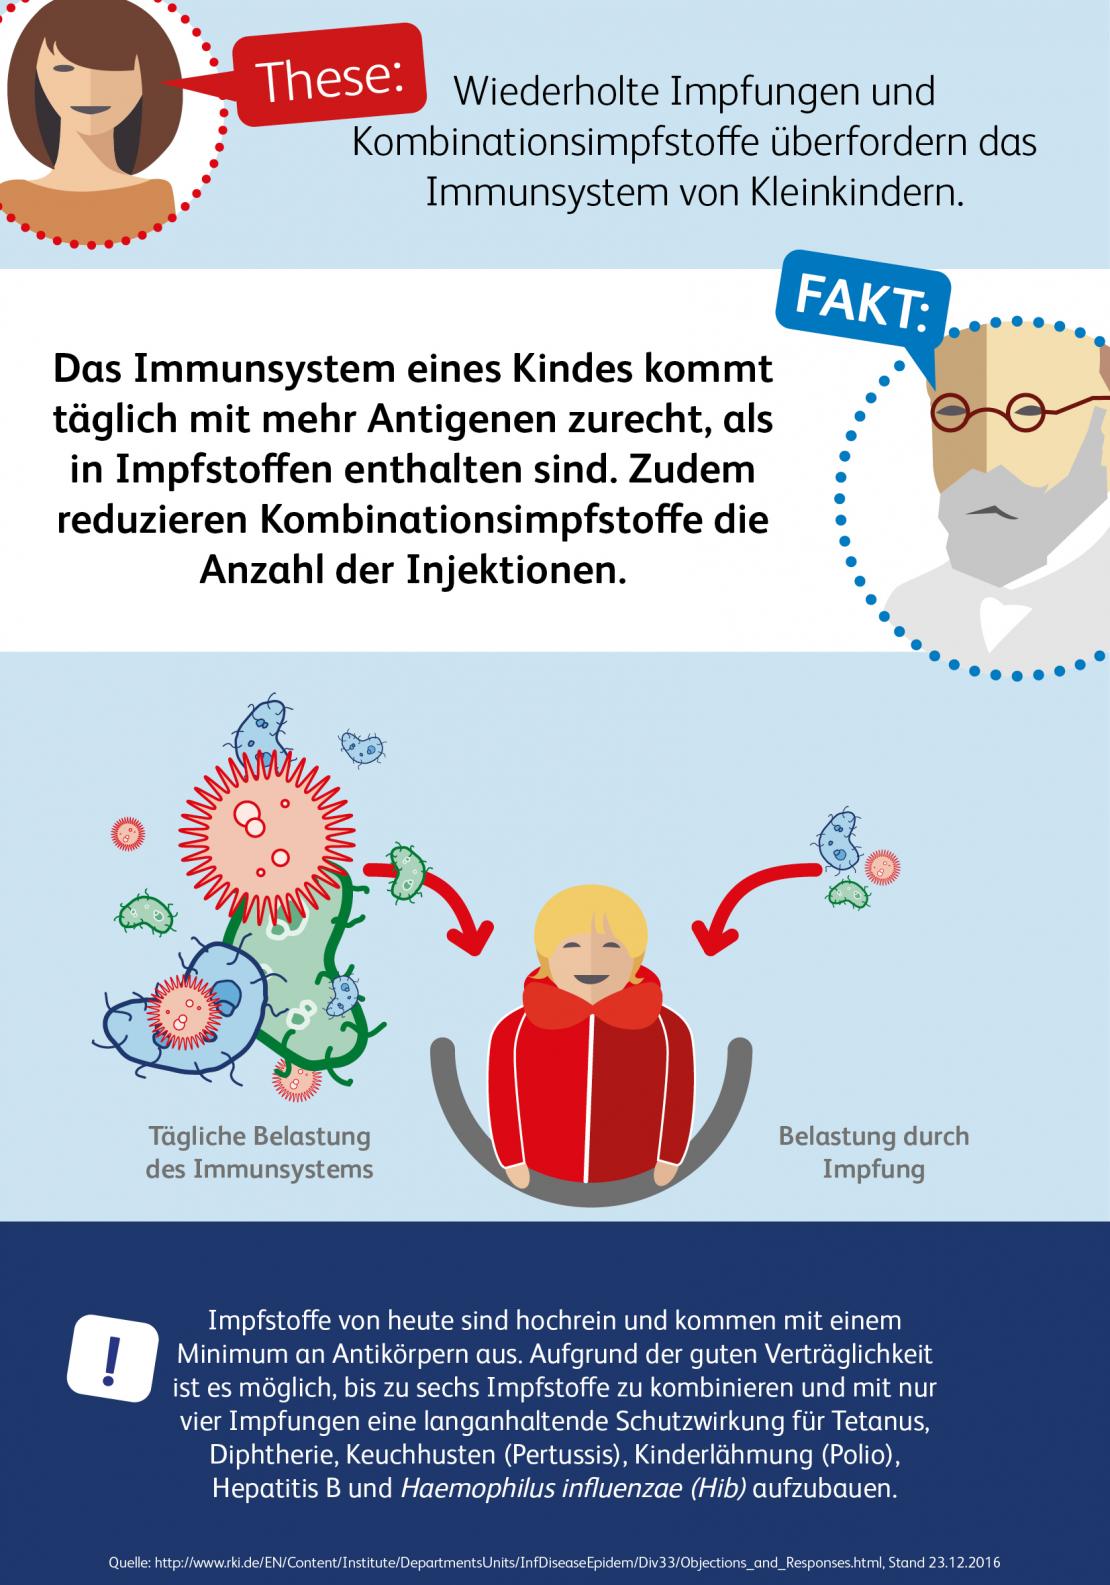 Infografik zur Belastung des Immunsystems durch Impfungen 